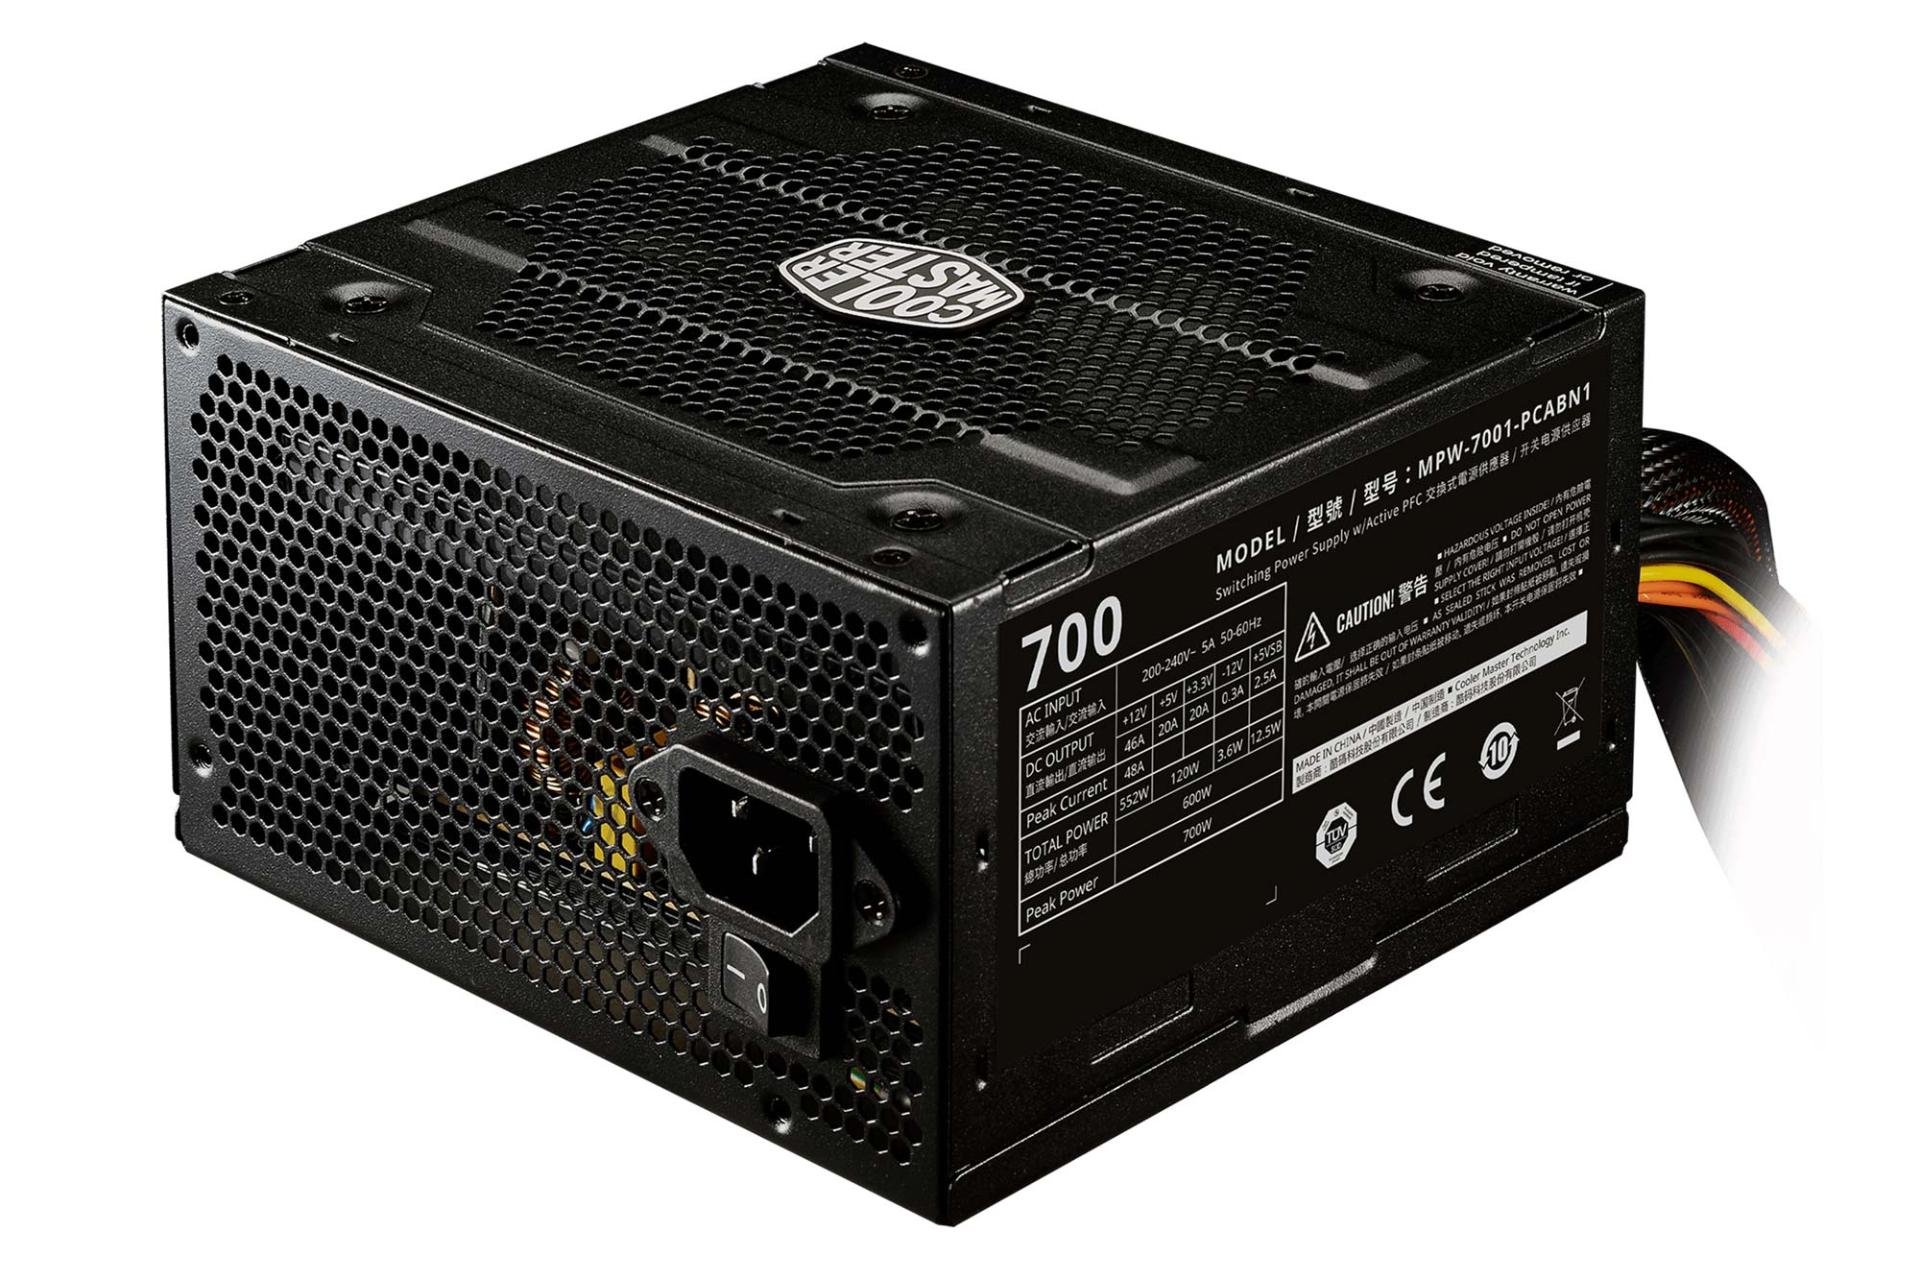 ابعاد پاور کامپیوتر کولر مستر ELITE P700 230V V3 با توان 700 وات